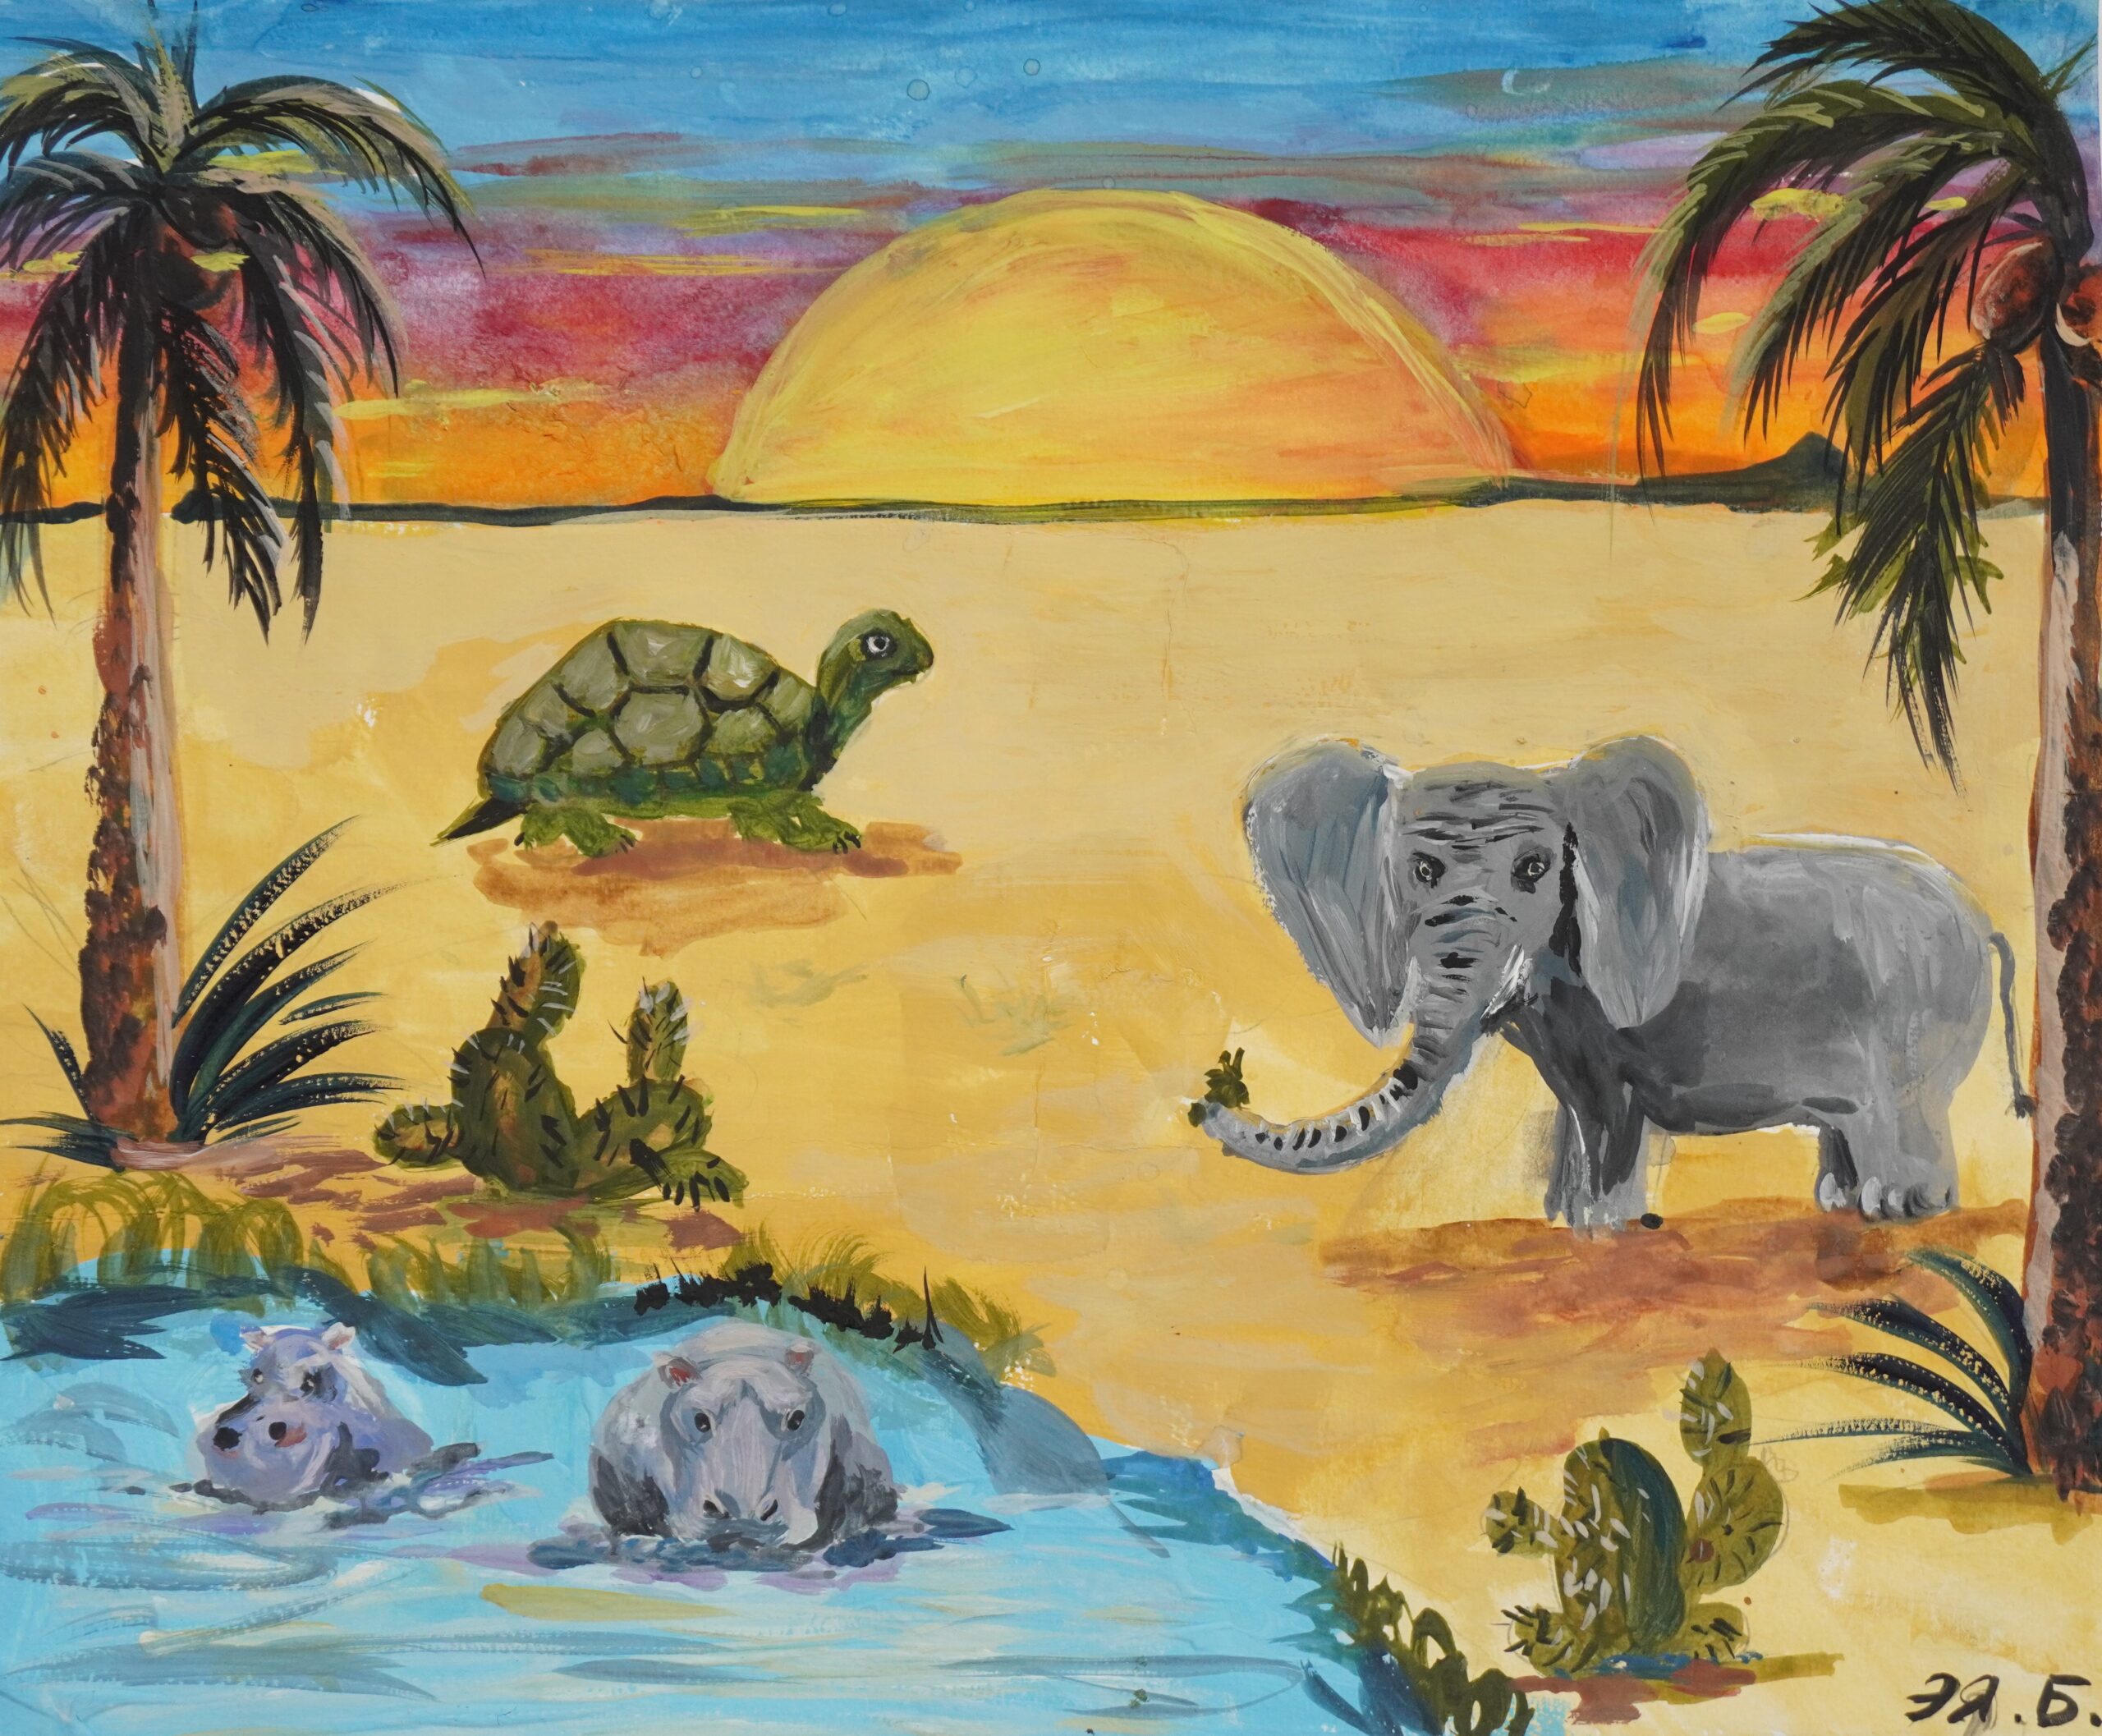 Африканская сказка "О слоне, черепахе и бегемоте"